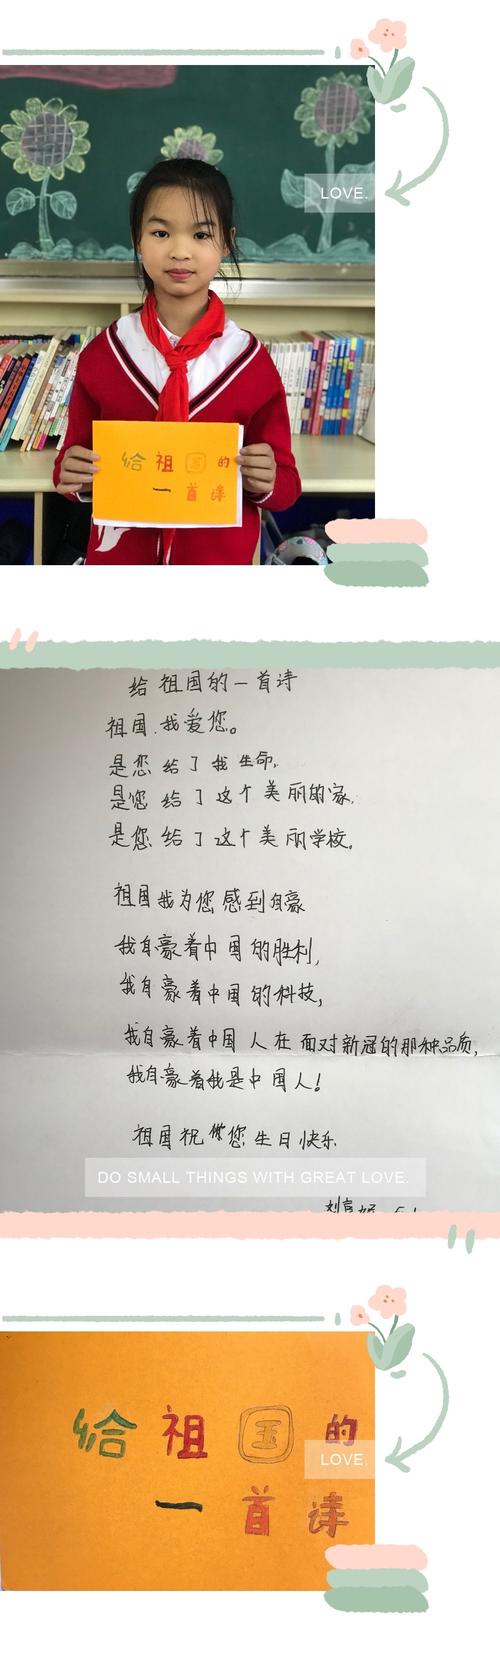 刘嘉妮同学写给祖国的一首诗,饱含着强烈的自豪感,祝福祖国生日恐乐